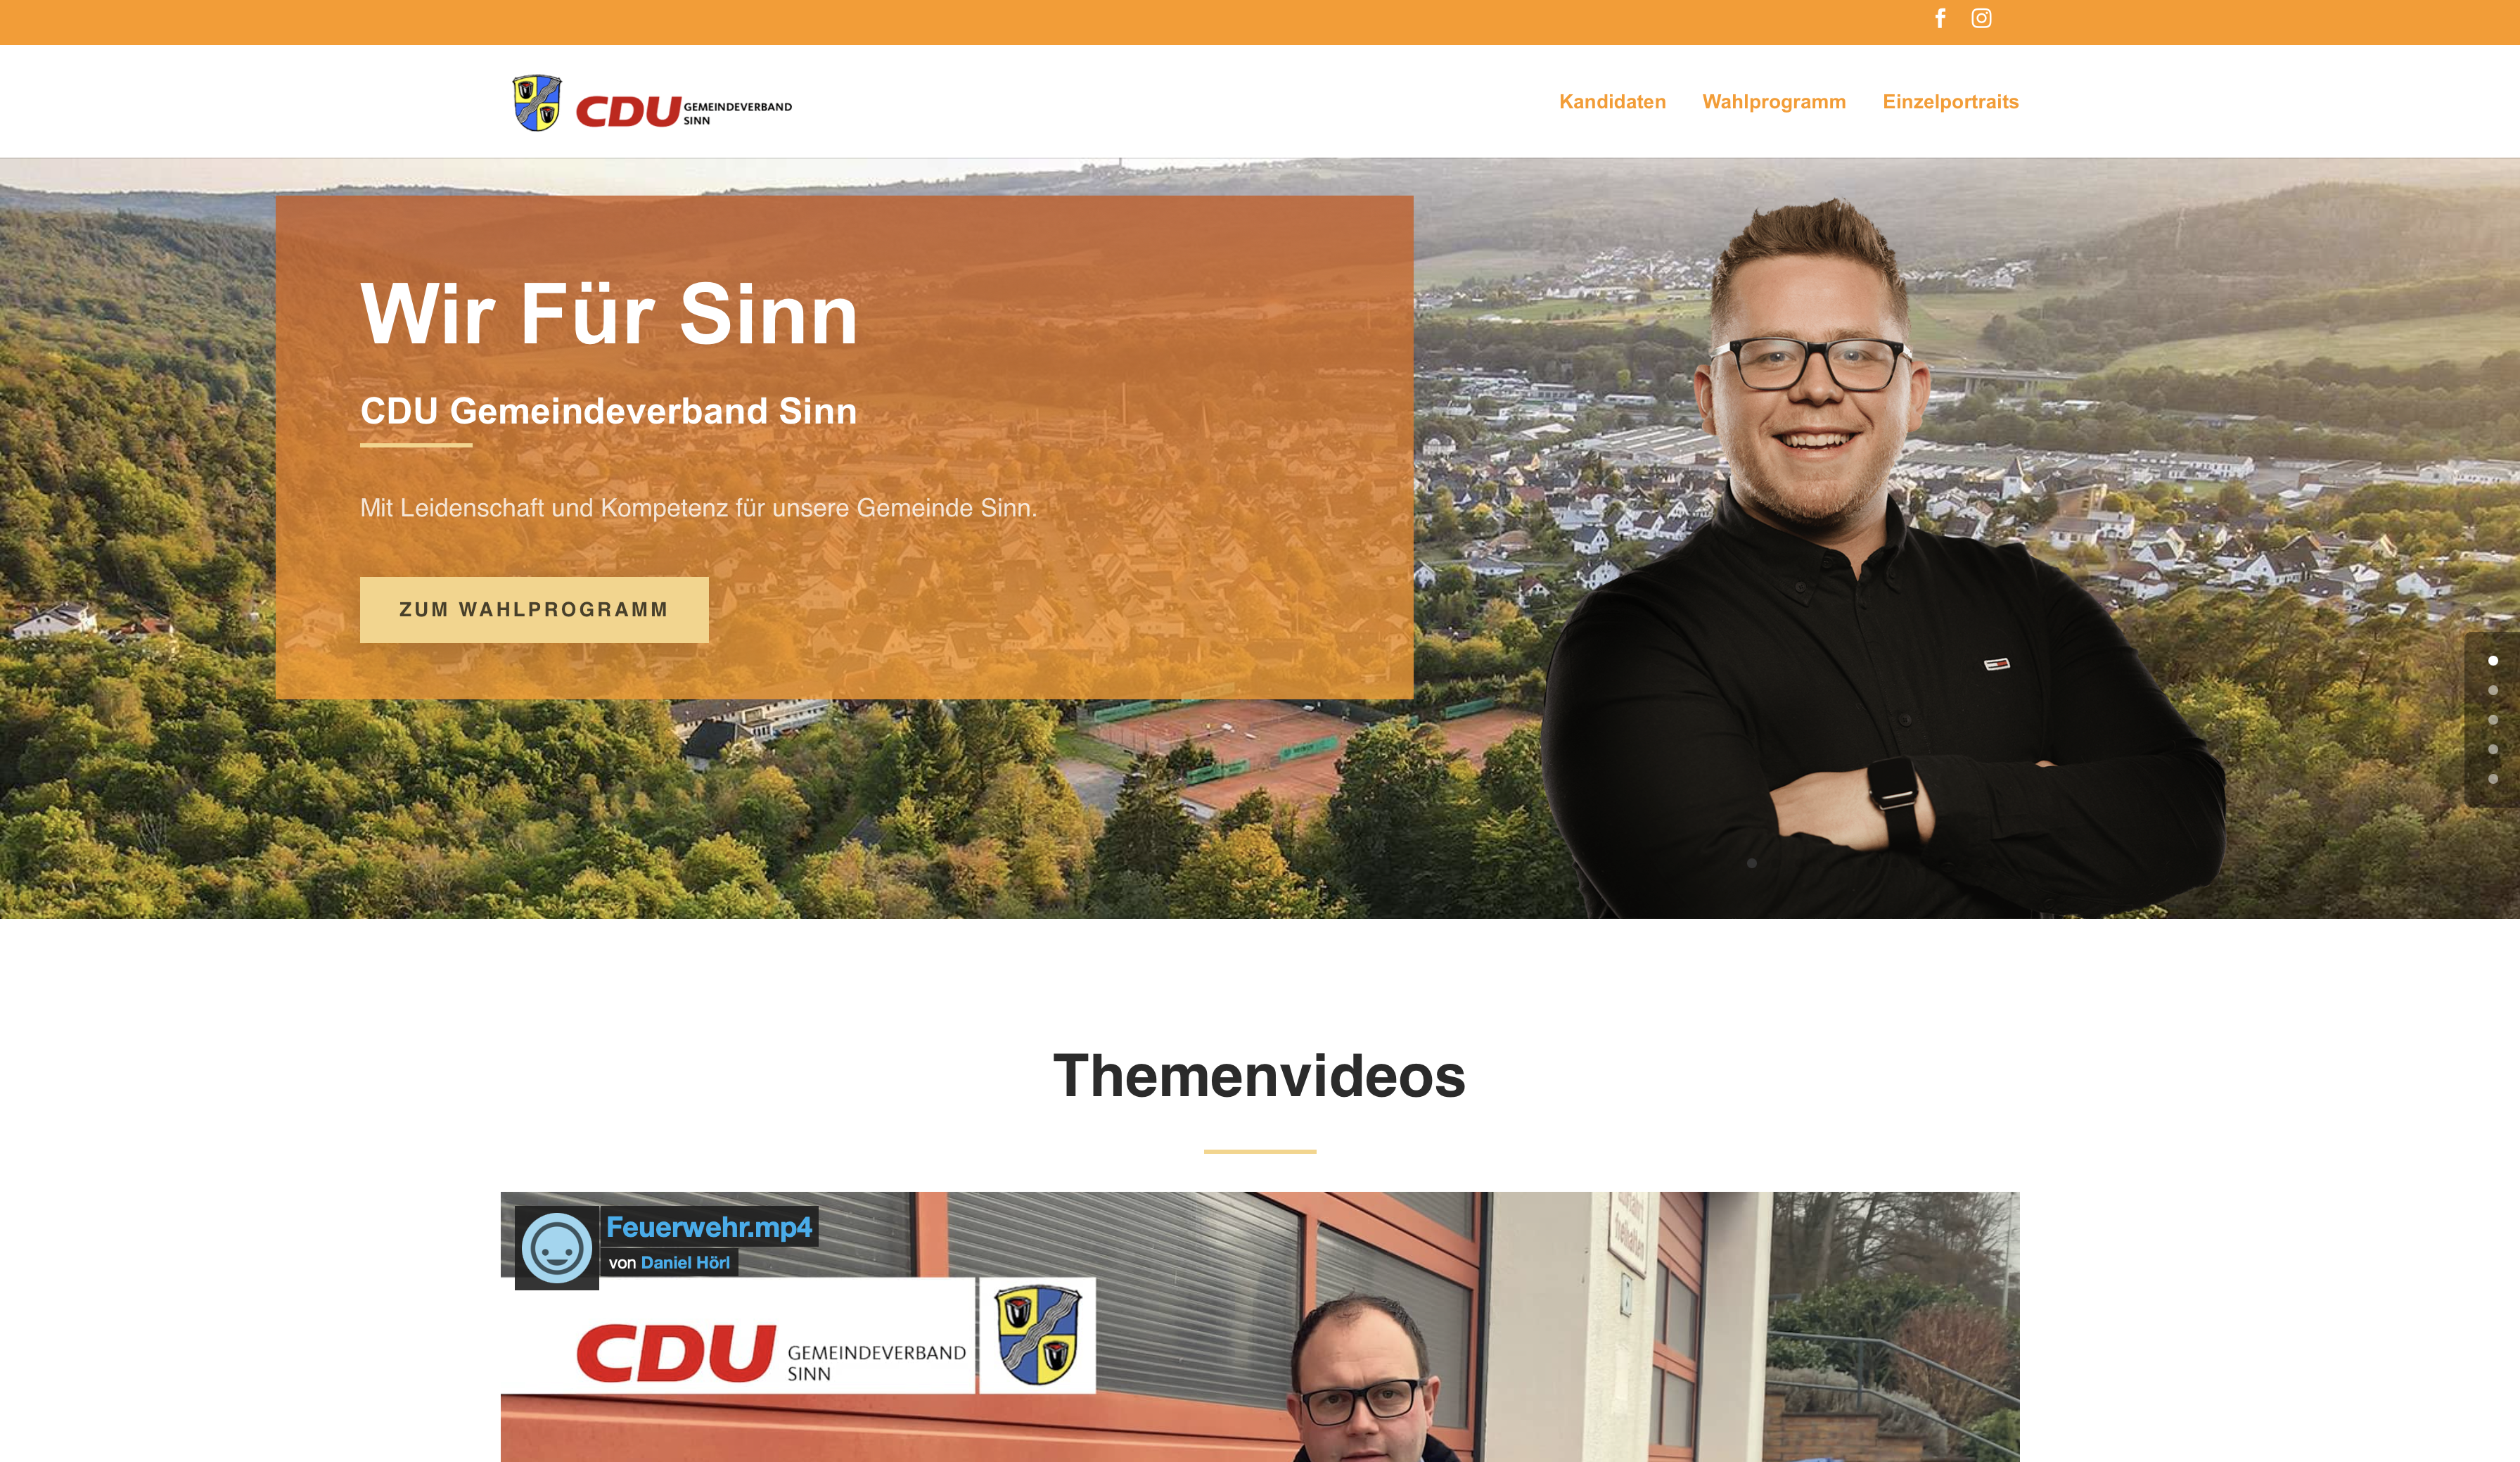 WirFürSinn.de - CDU Gemeindeverband Sinn